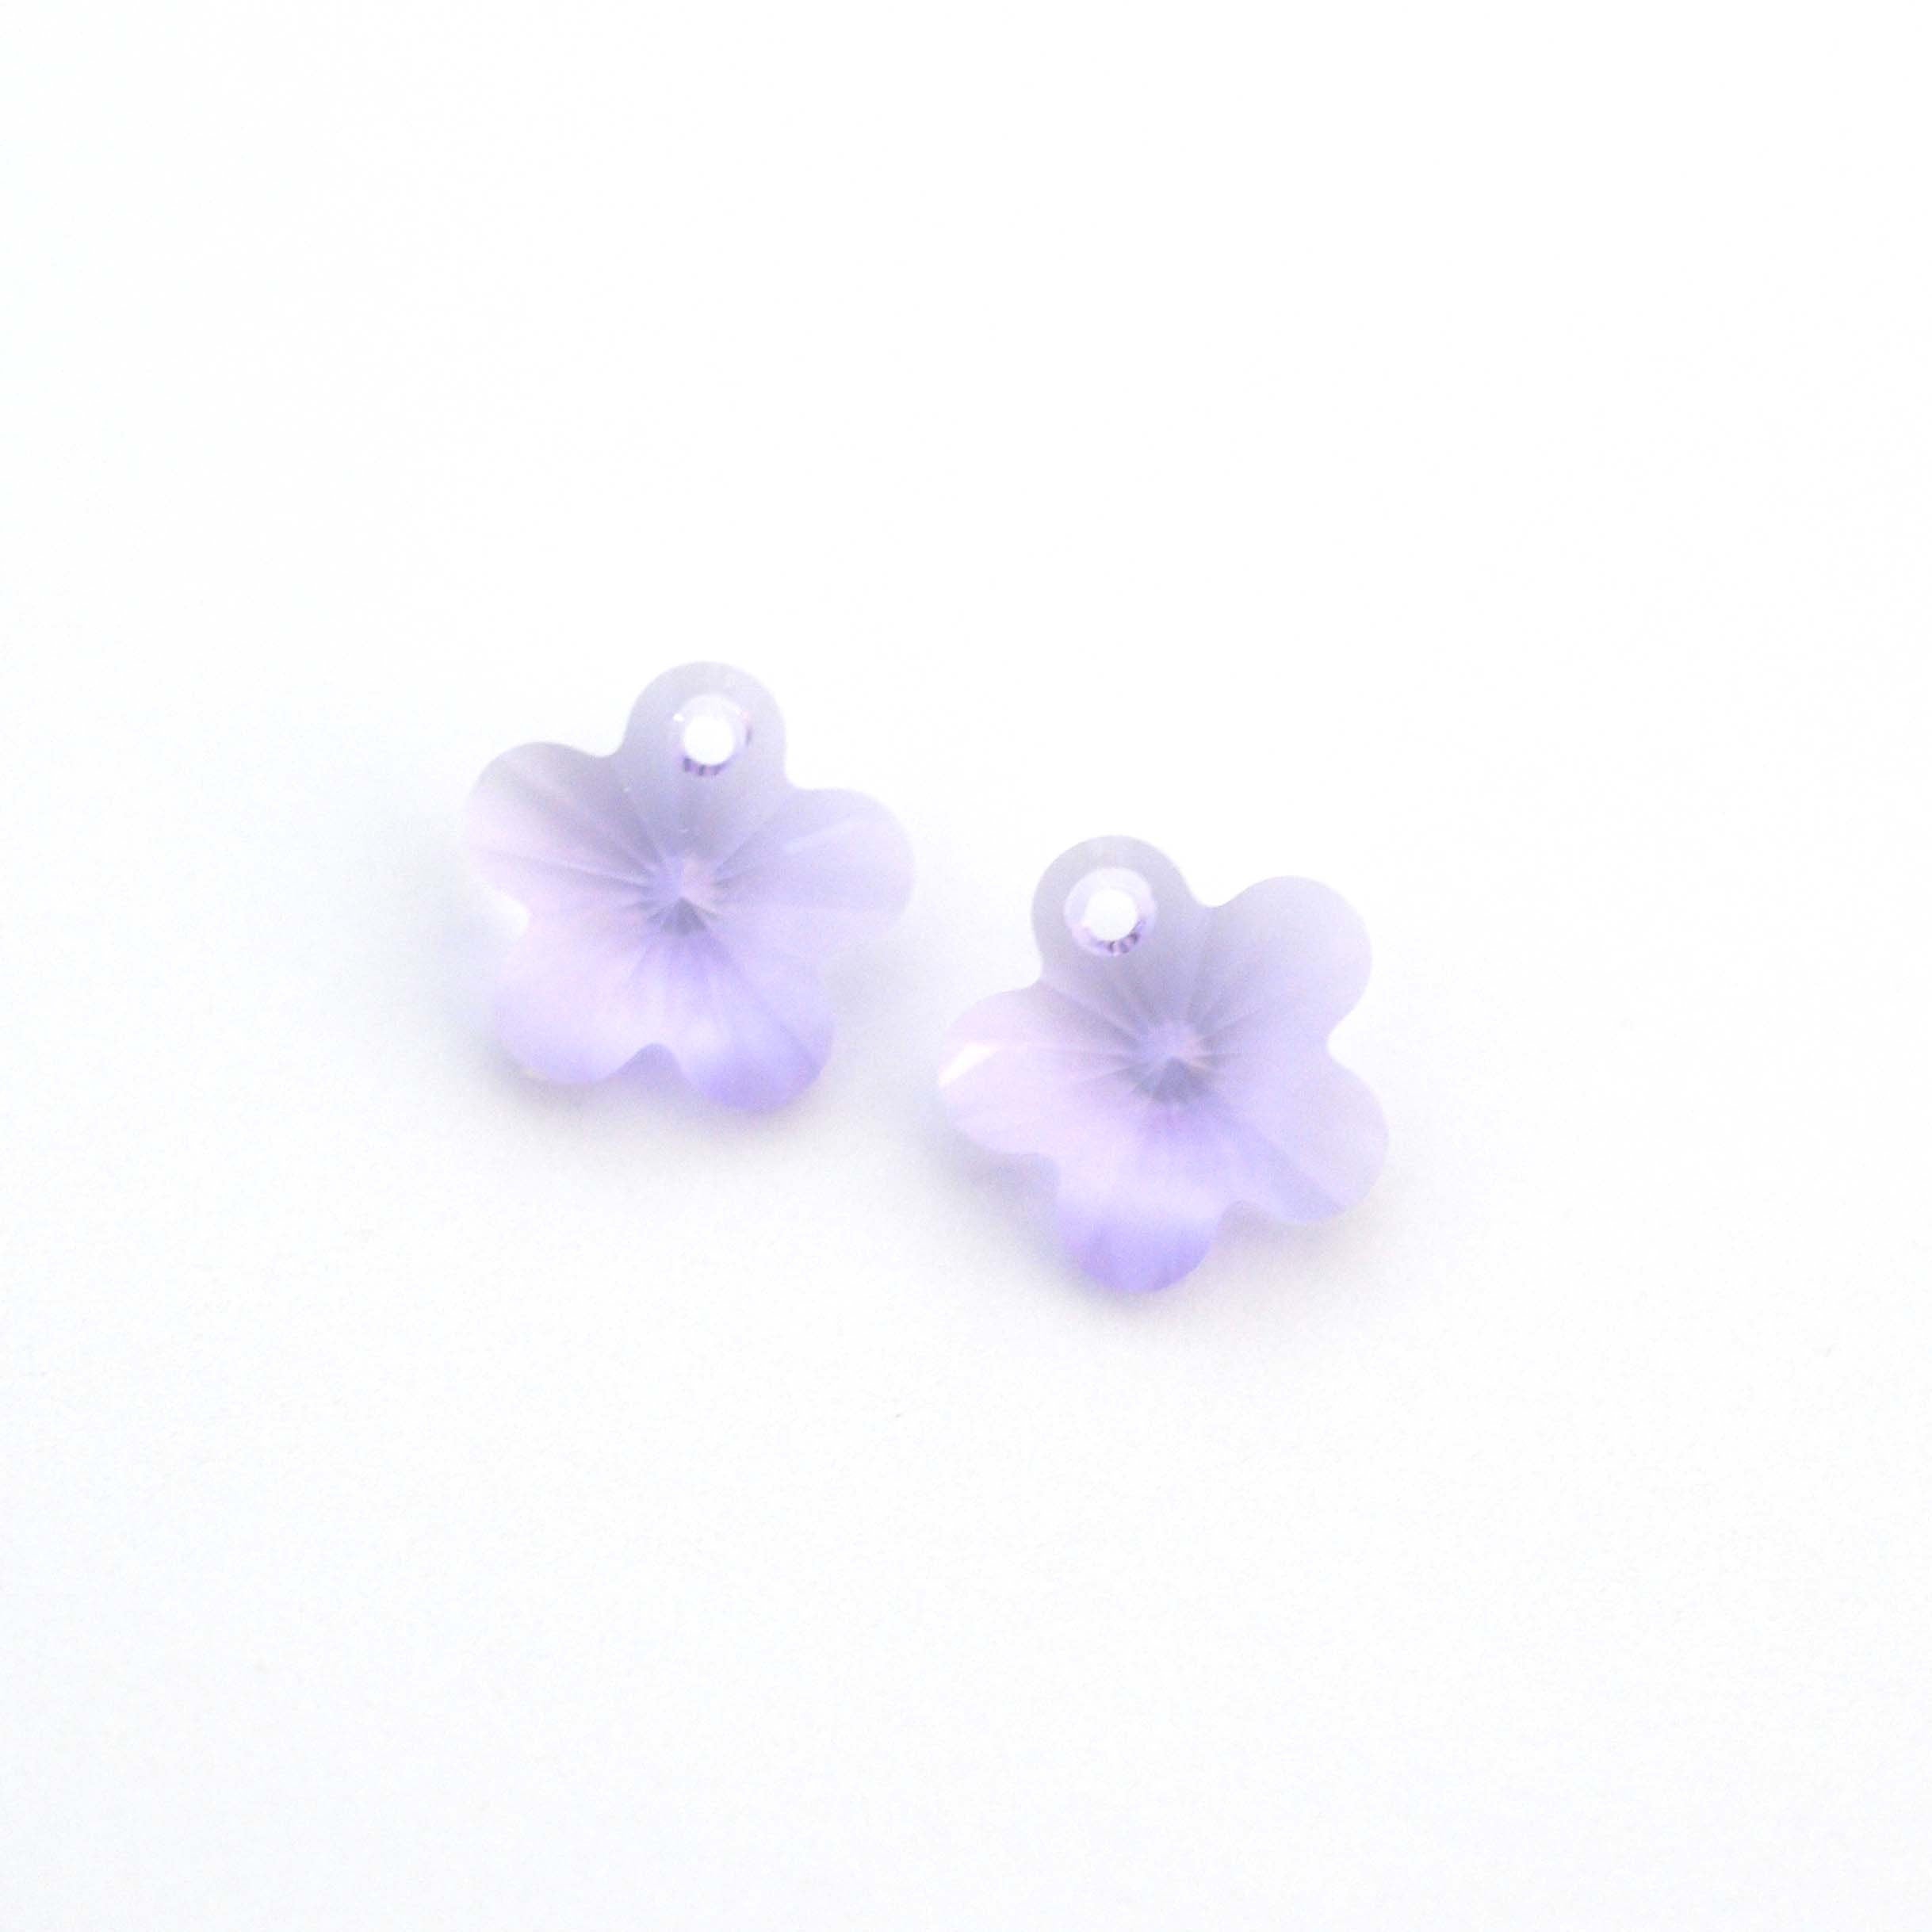 Violet Purple Flower Pendant  6744 Barton Crystal 14mm - 1 Pair (2 Pieces)